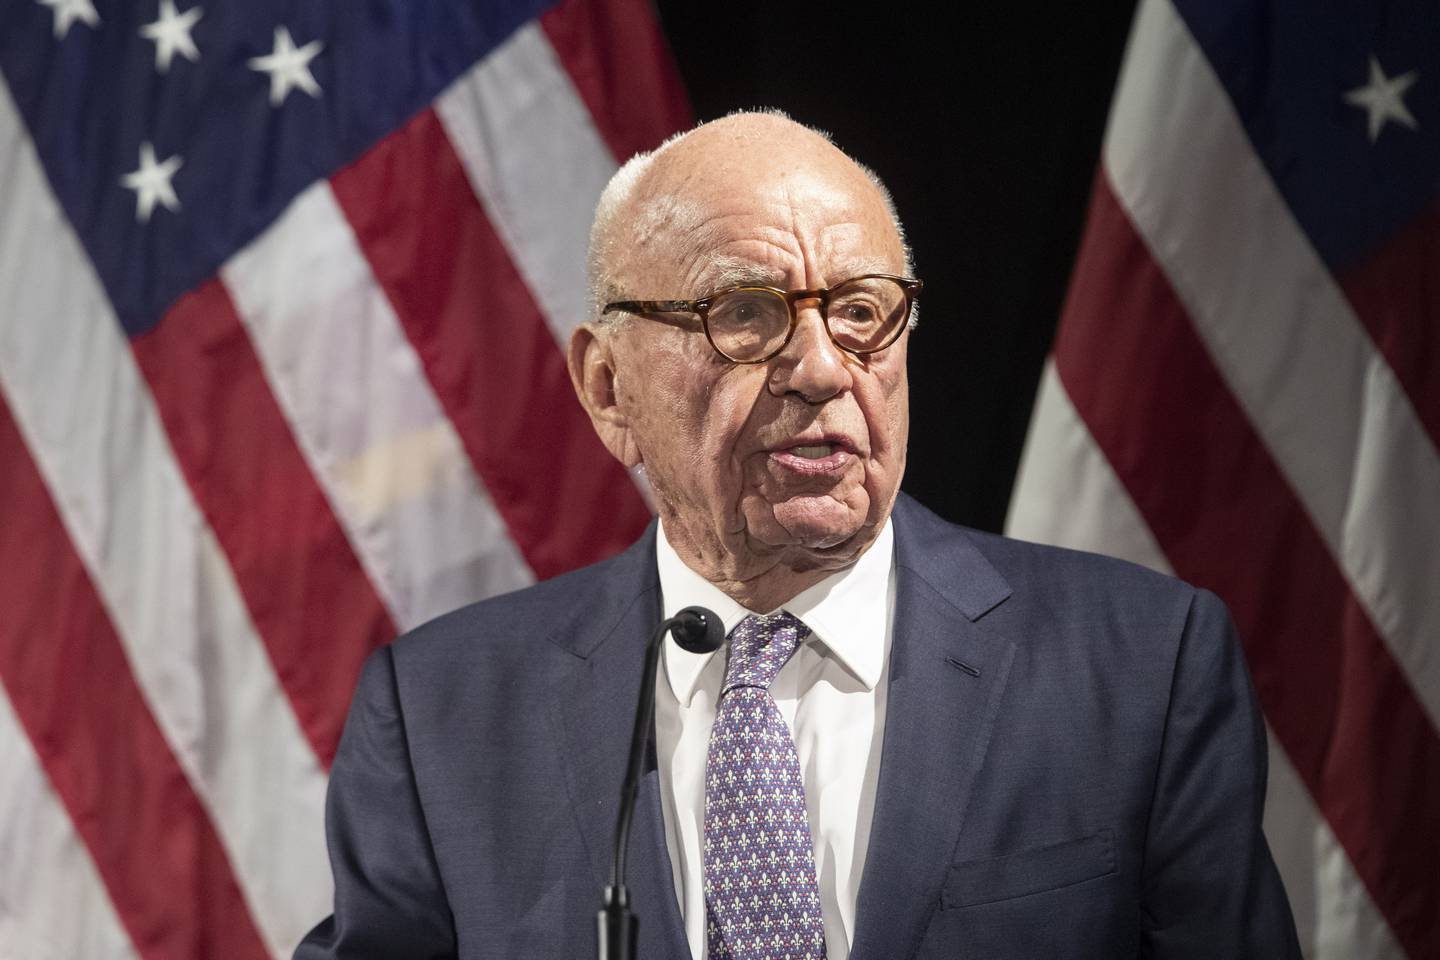 Rupert Murdoch kalte Donald Trumps påstander om at valget i 2020 ble stjålet for galskap og ødeleggende, ifølge rettsdokumenter. Arkivfoto: Mary Altaffer / AP / NTB